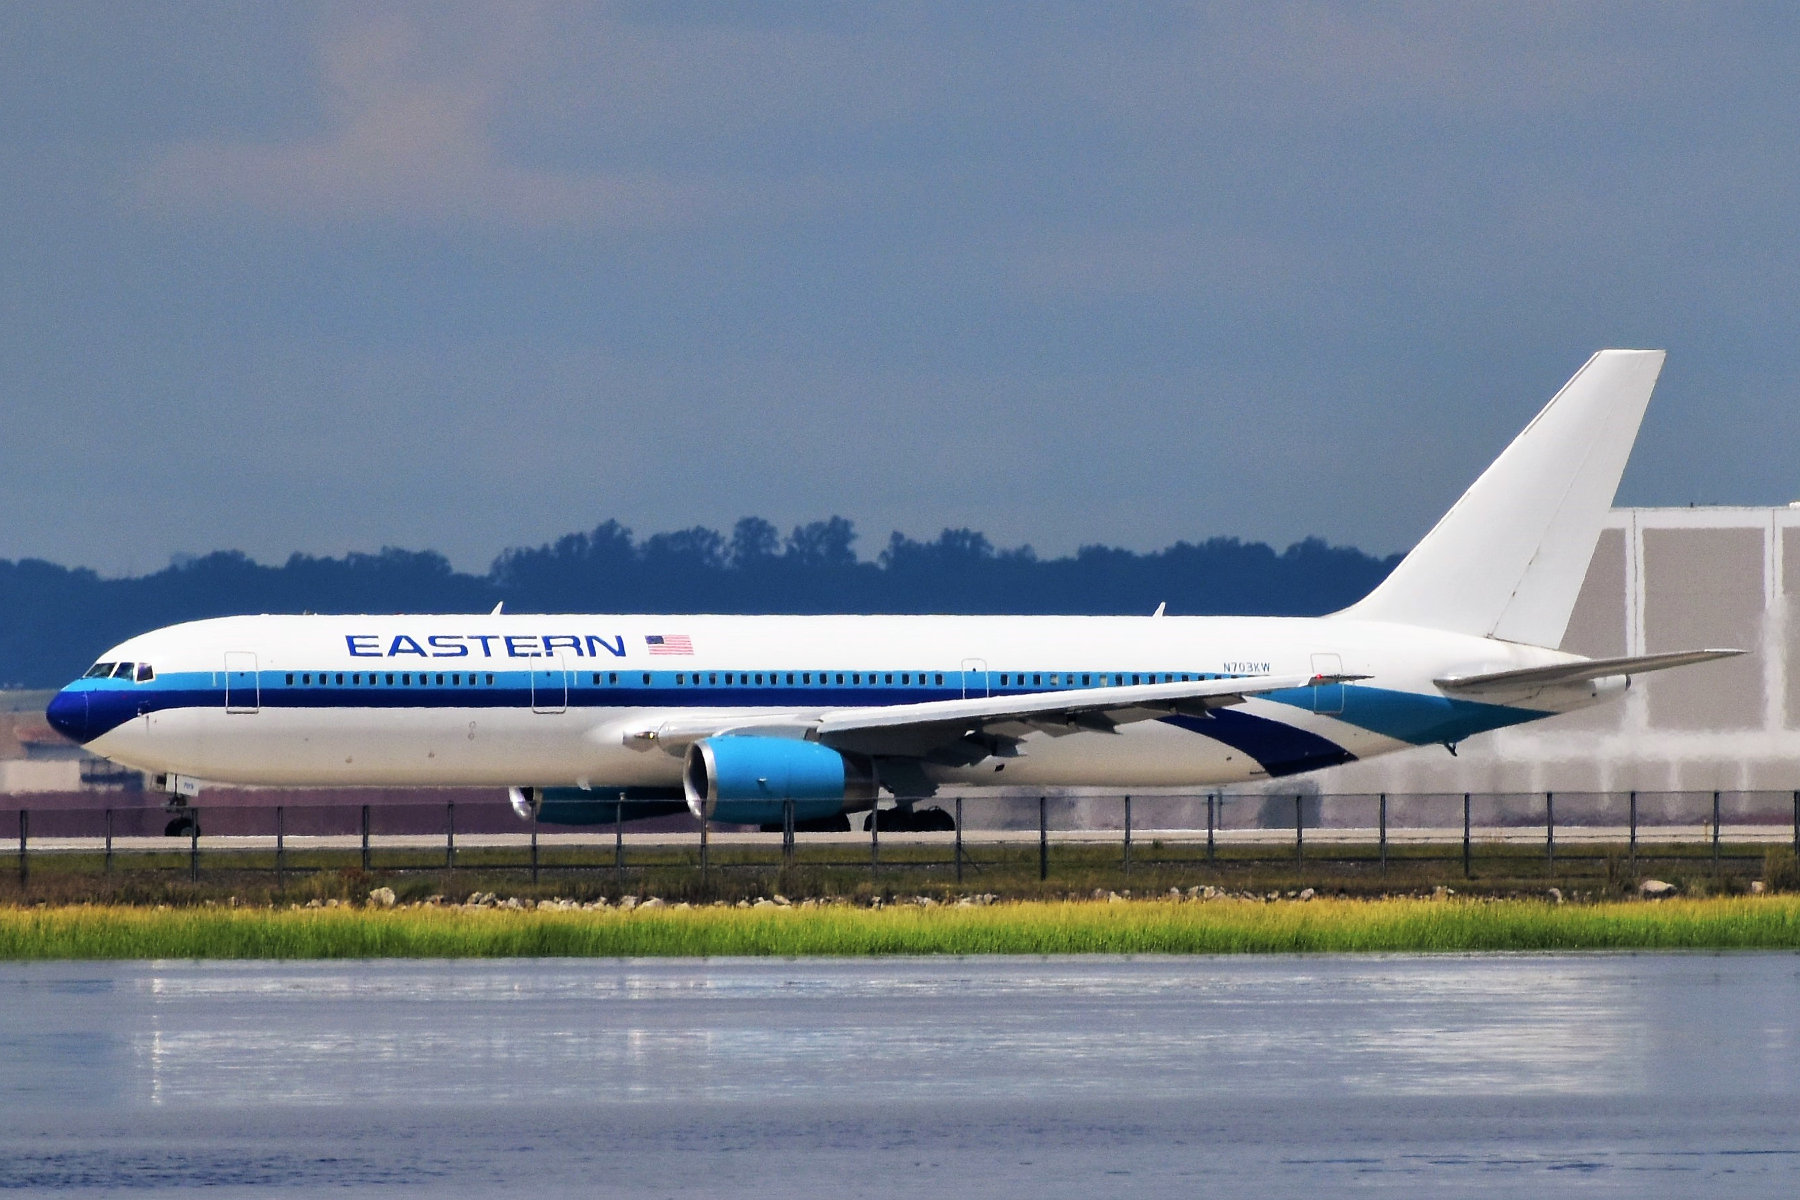 ファイル:Eastern Airlines (2D) Boeing 767-336(ER) N703KW taxiing 